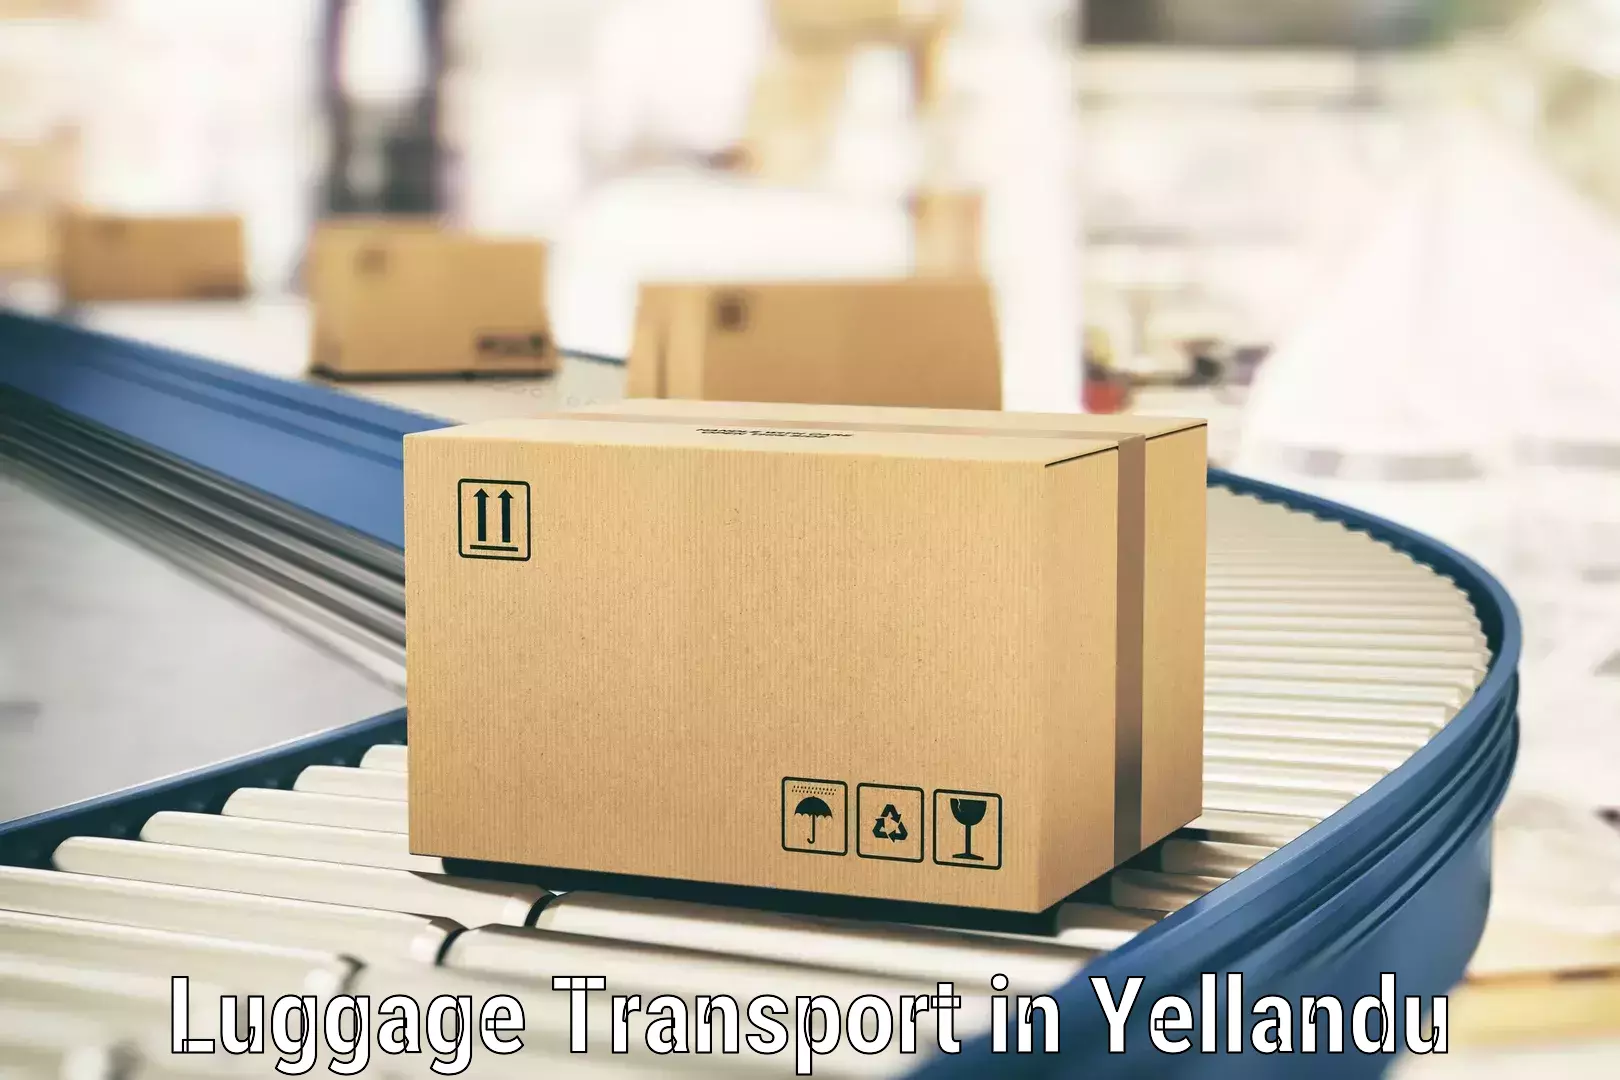 Luggage transport operations in Yellandu